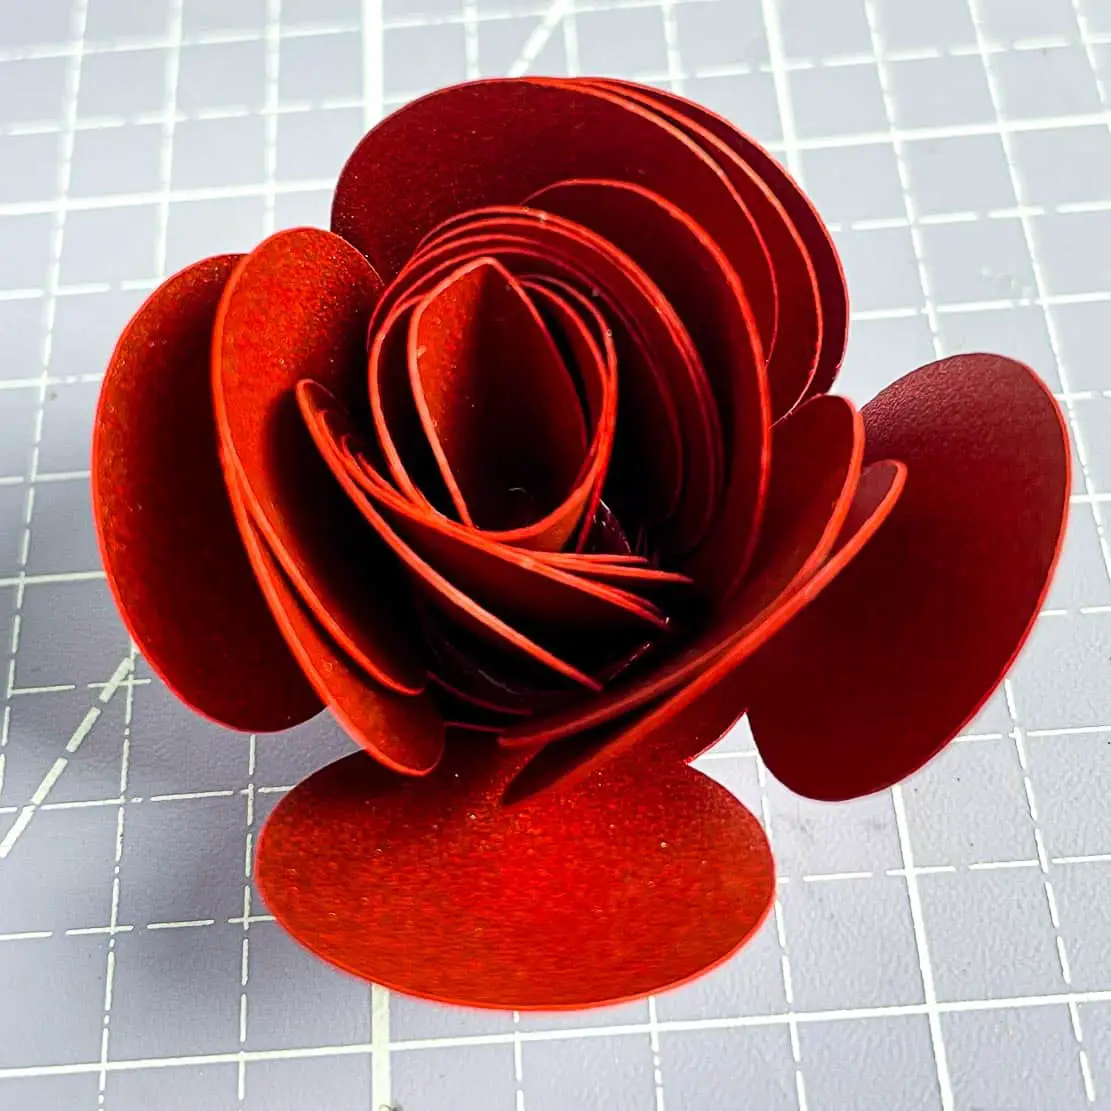 Rosen aus Papier basteln - Anleitung